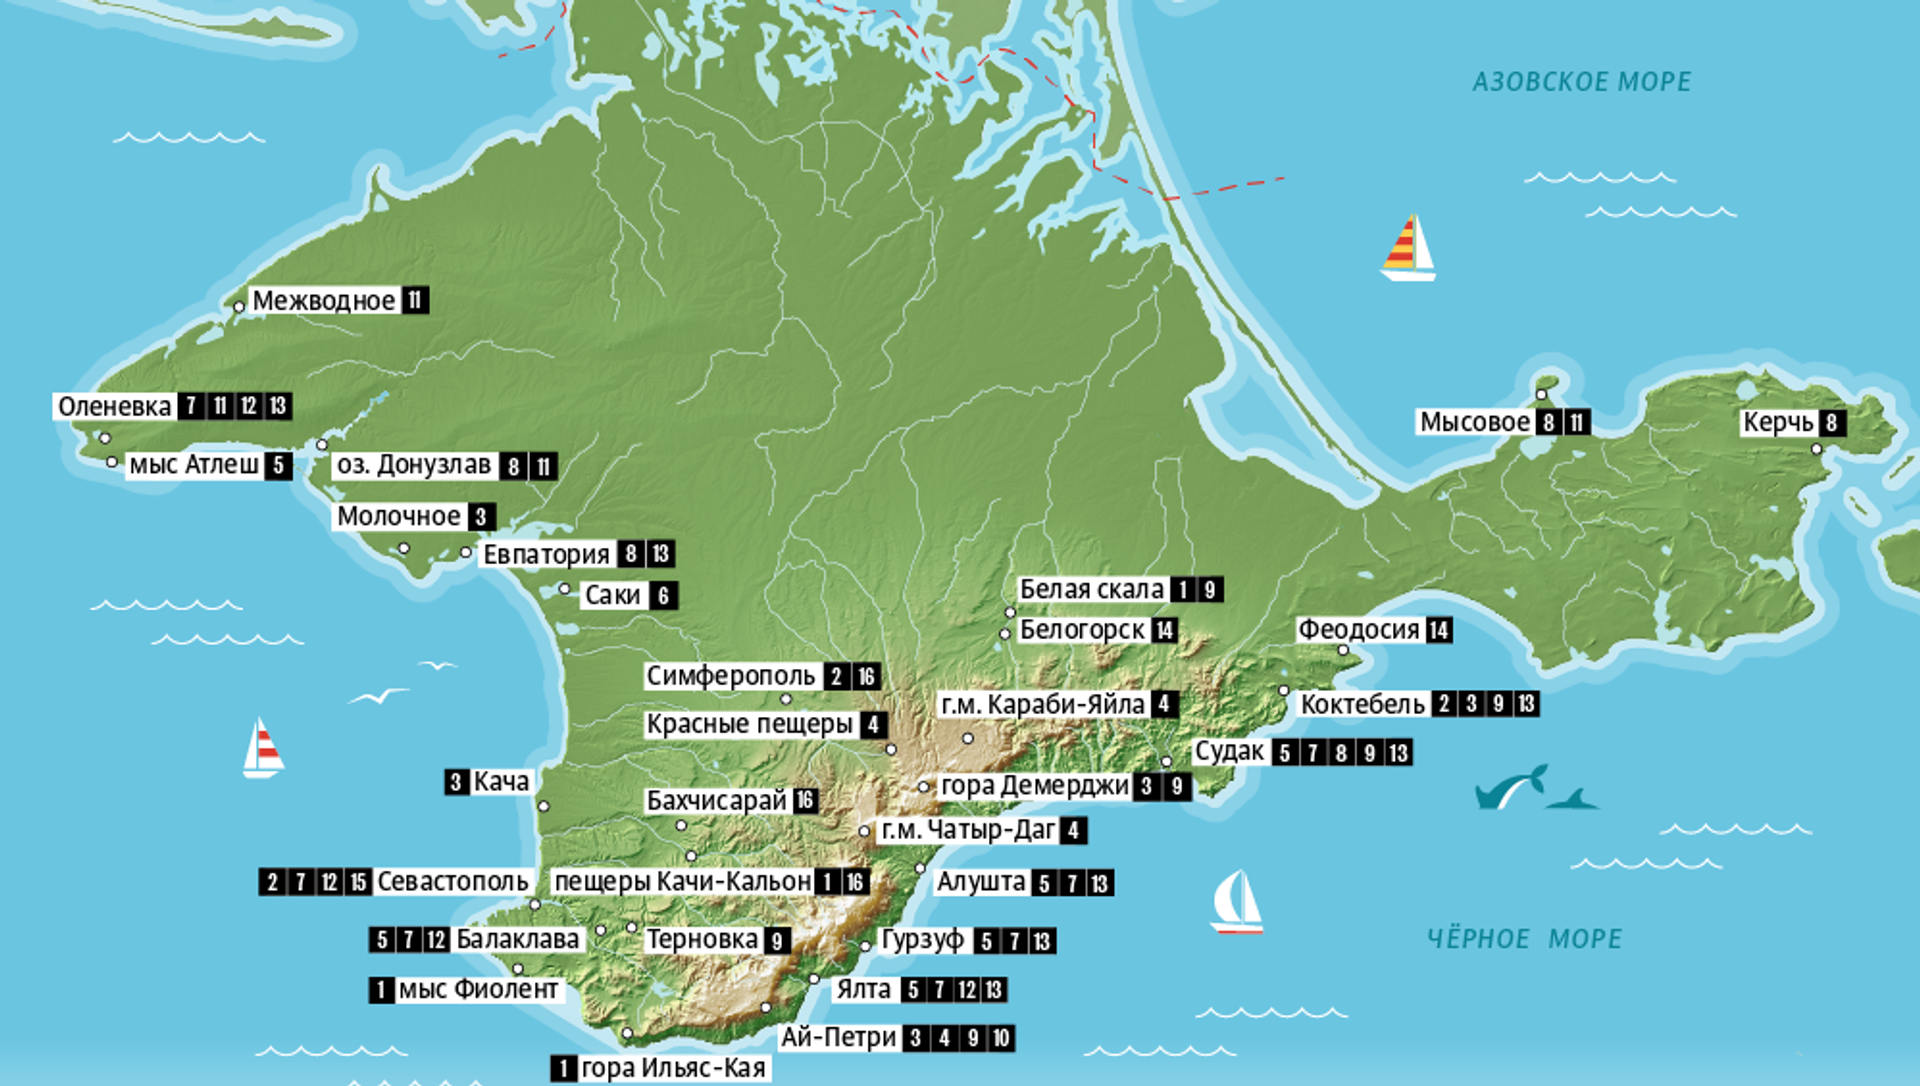 Крым достопримечательности на карте фото с описанием